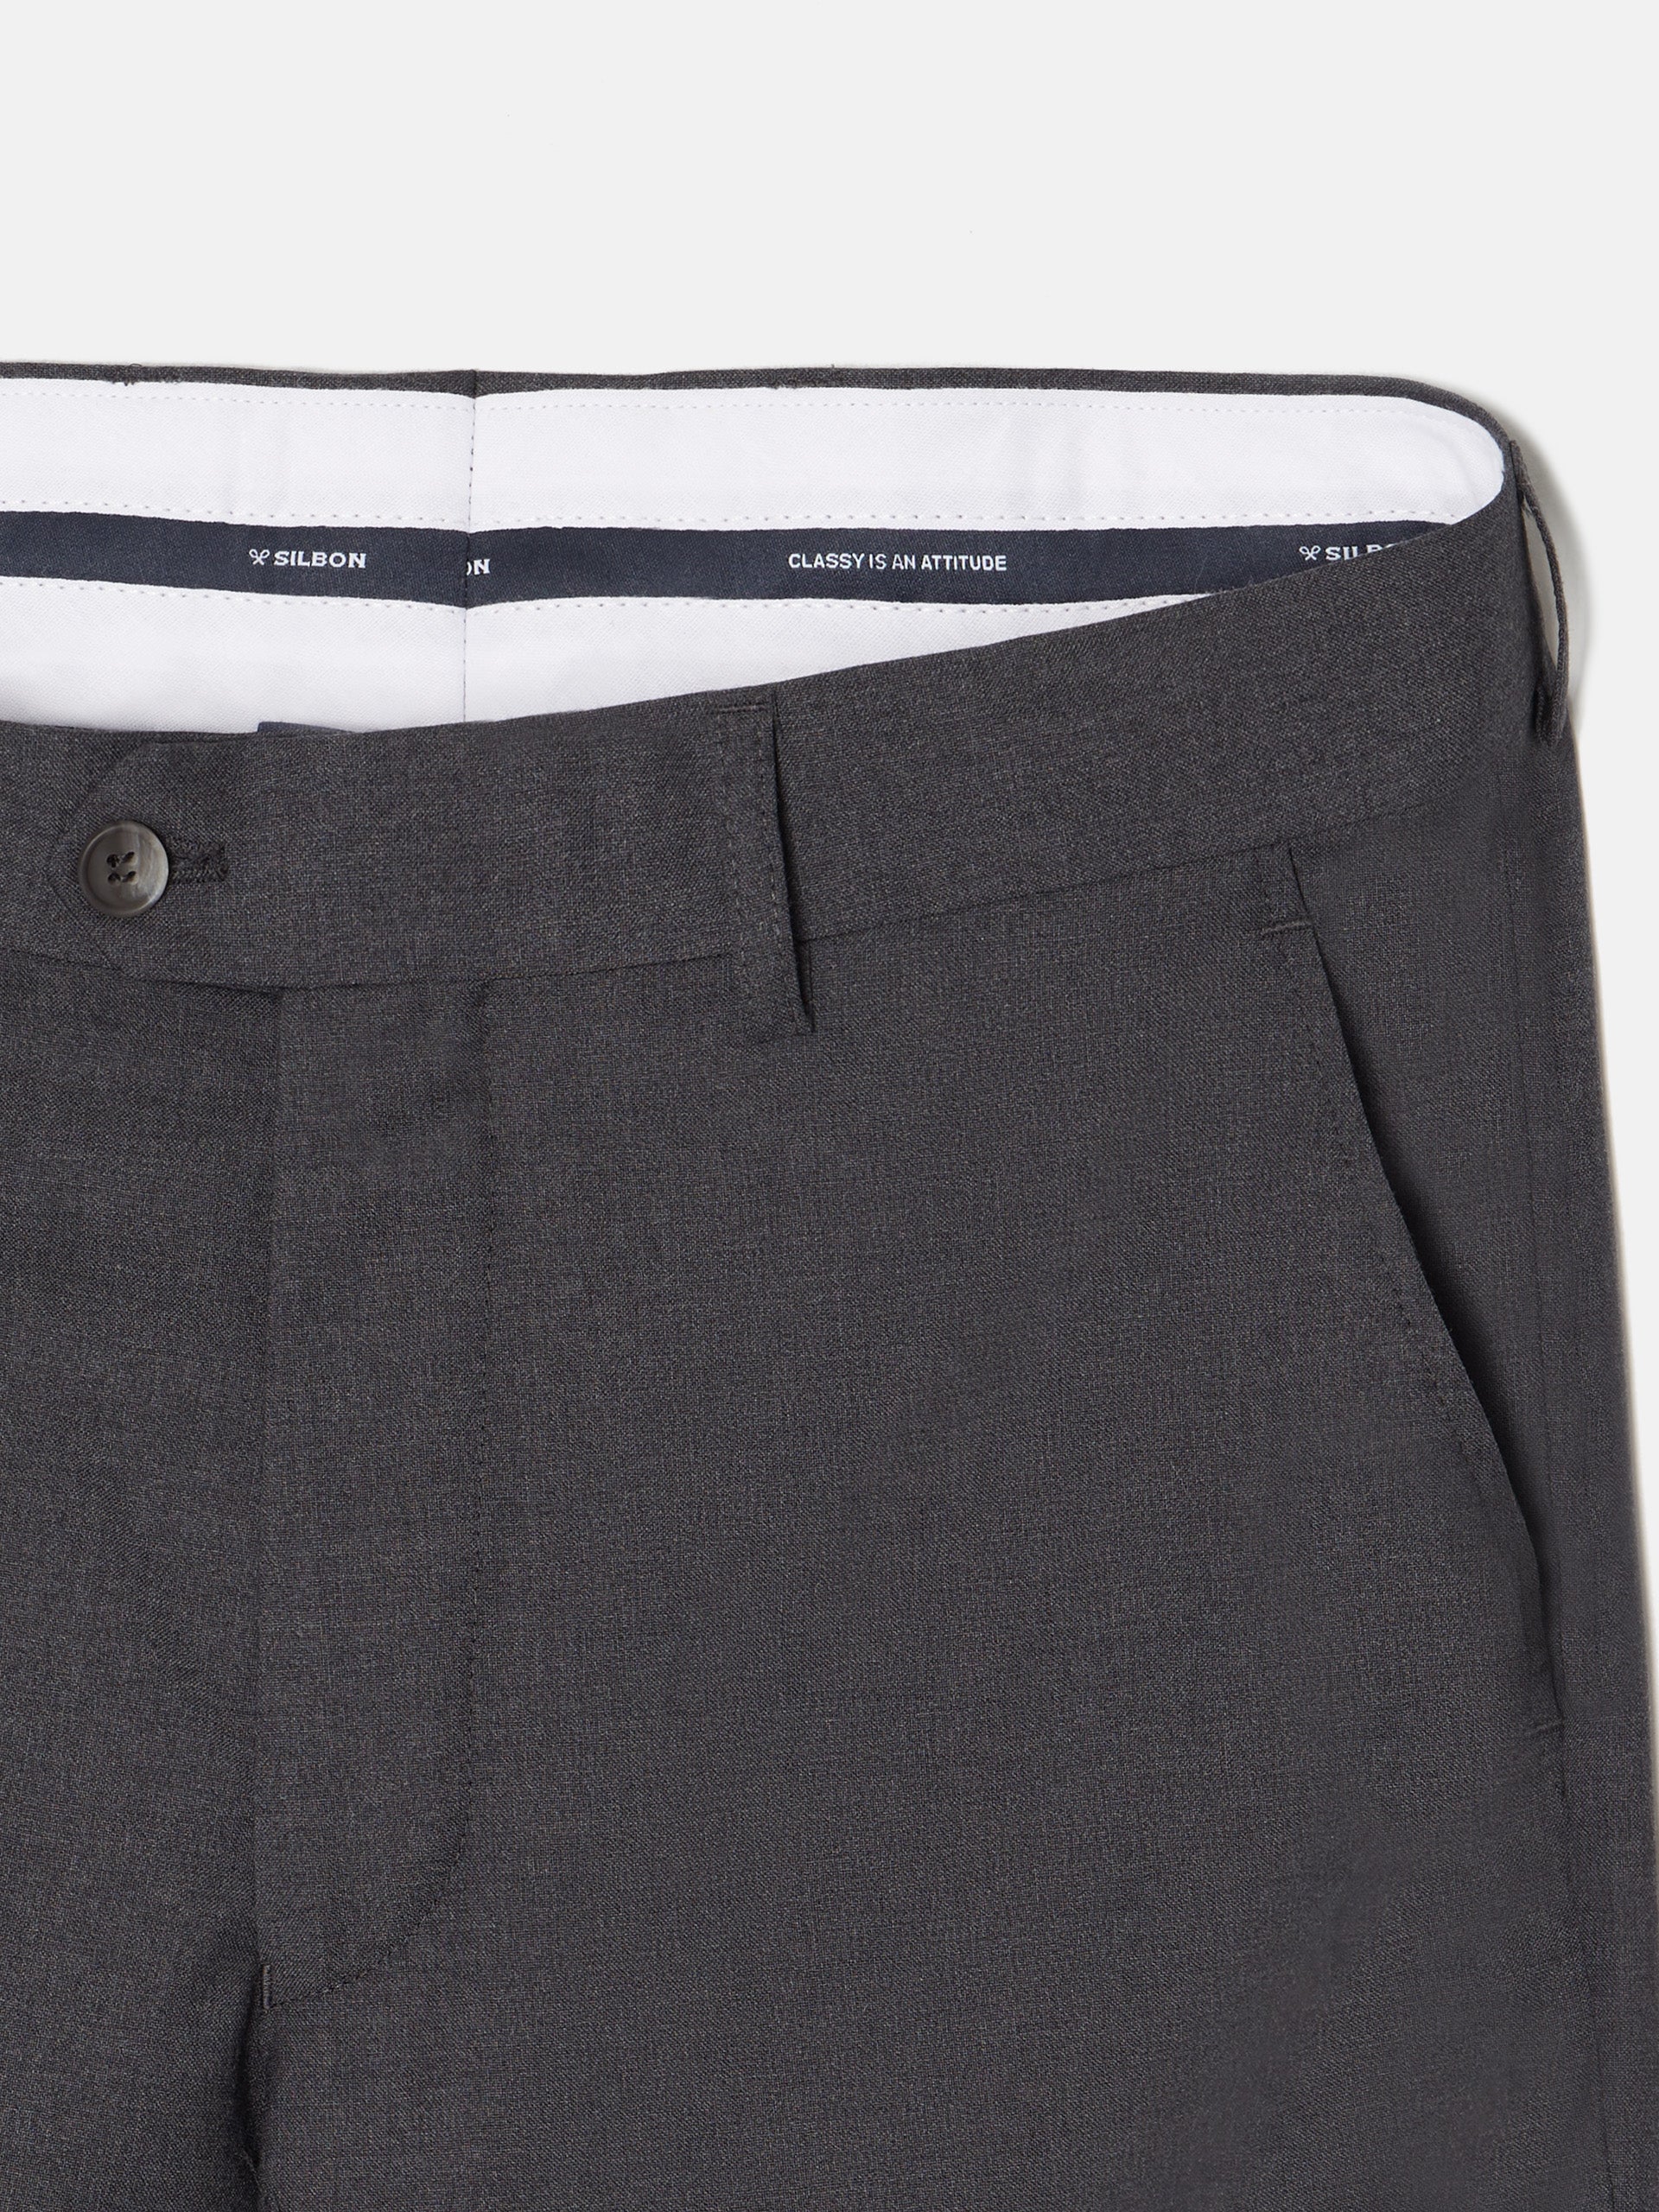 Pantalon traje cruzado stretch gris